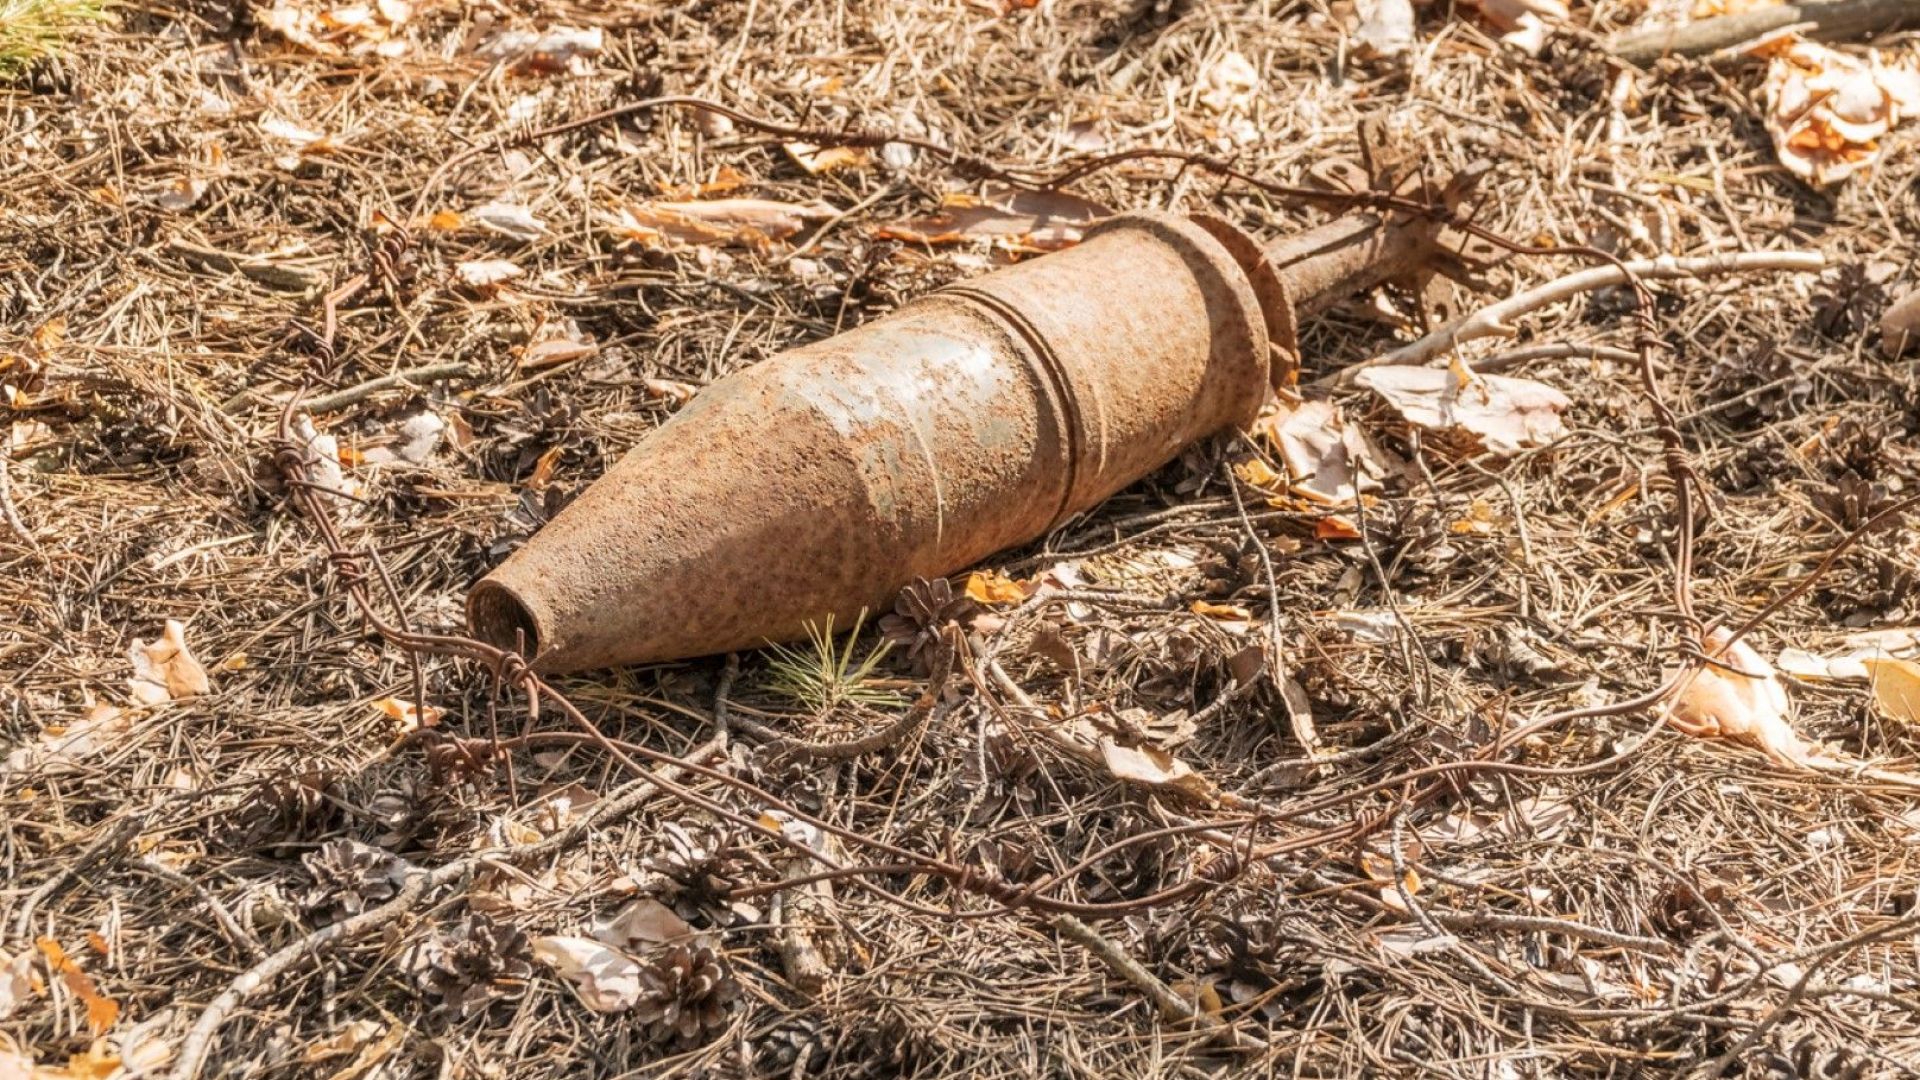 Откриха невзривен снаряд в двора на къща в София